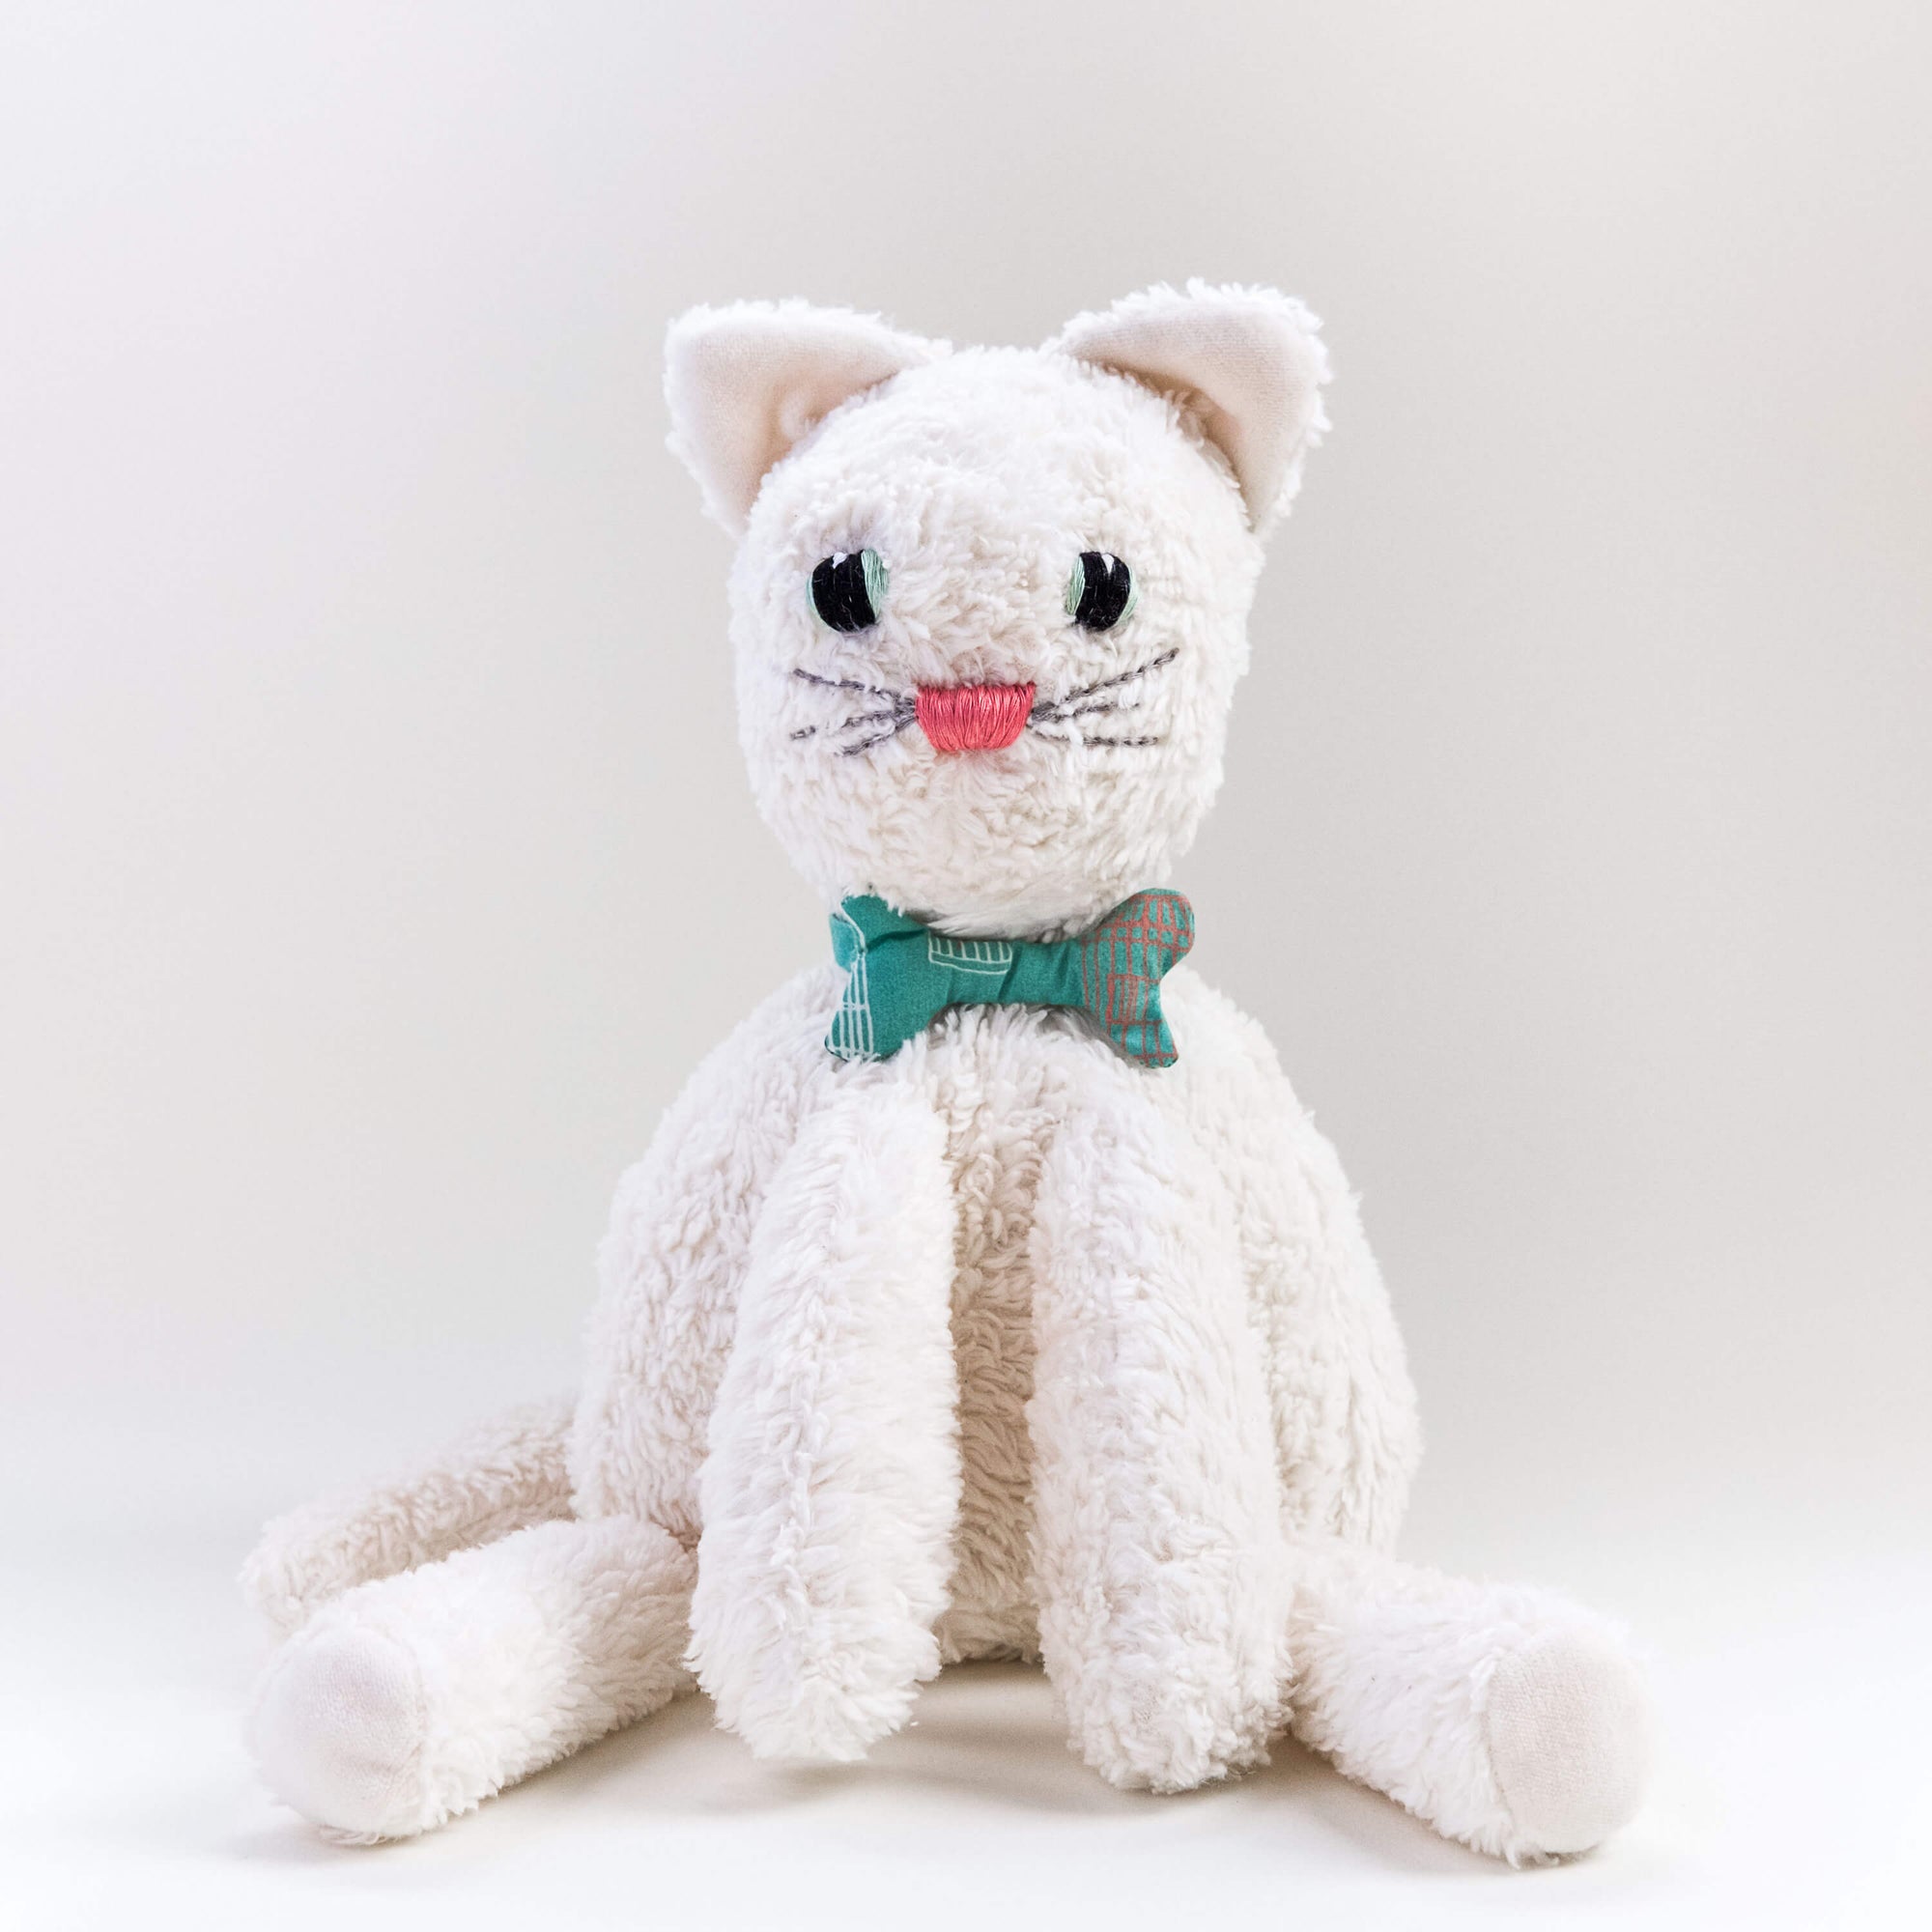 El gato Max. Muñeco de peluche hecho a mano con telas y relleno de algodón orgánico y ecológico.